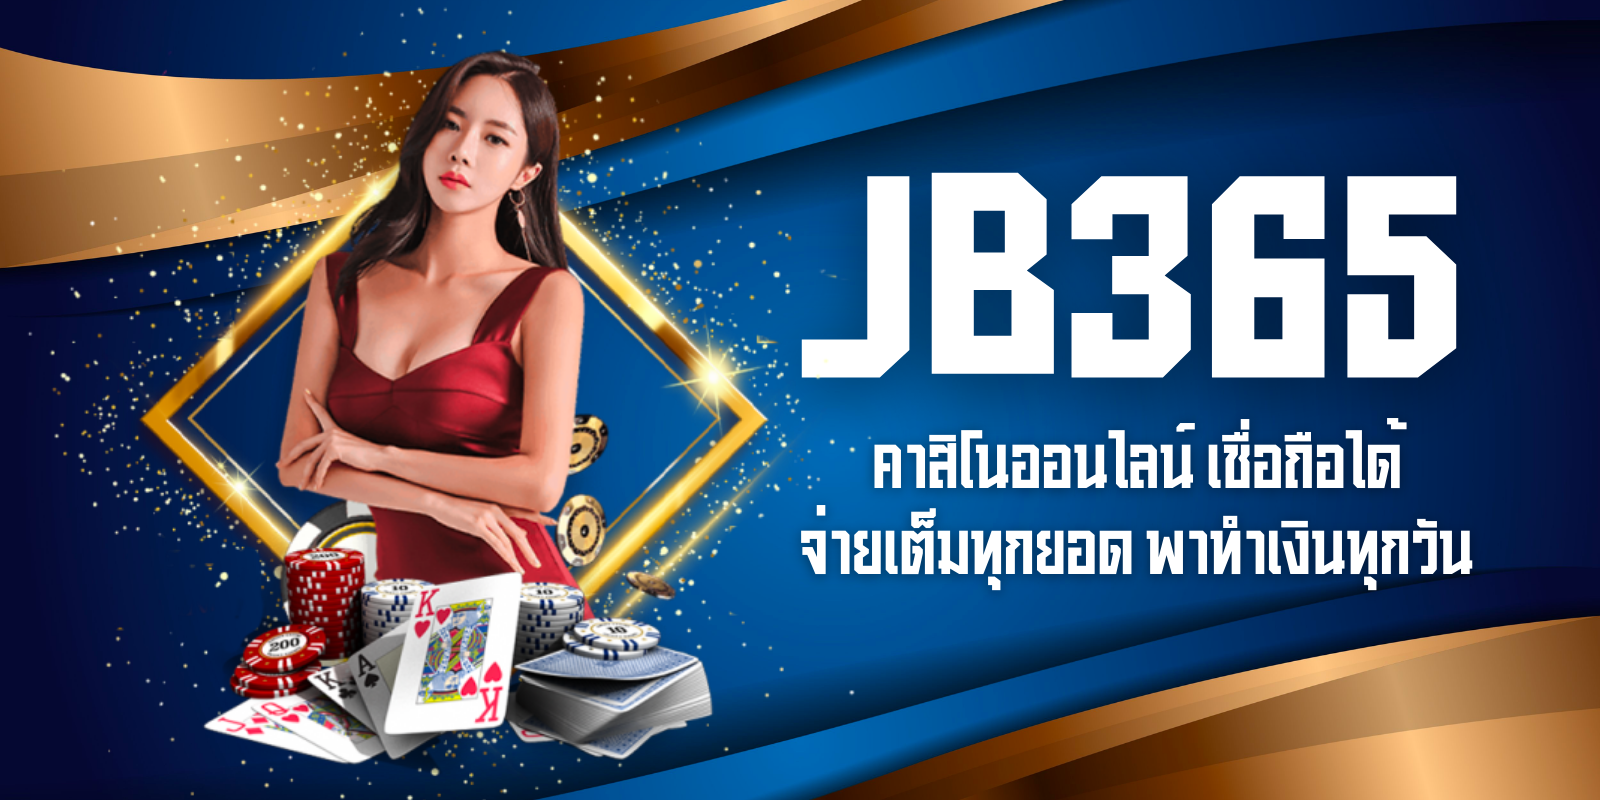 jb365 คาสิโนออนไลน์ เชื่อถือได้ จ่ายเต็มทุกยอด พาทำเงินทุกวัน